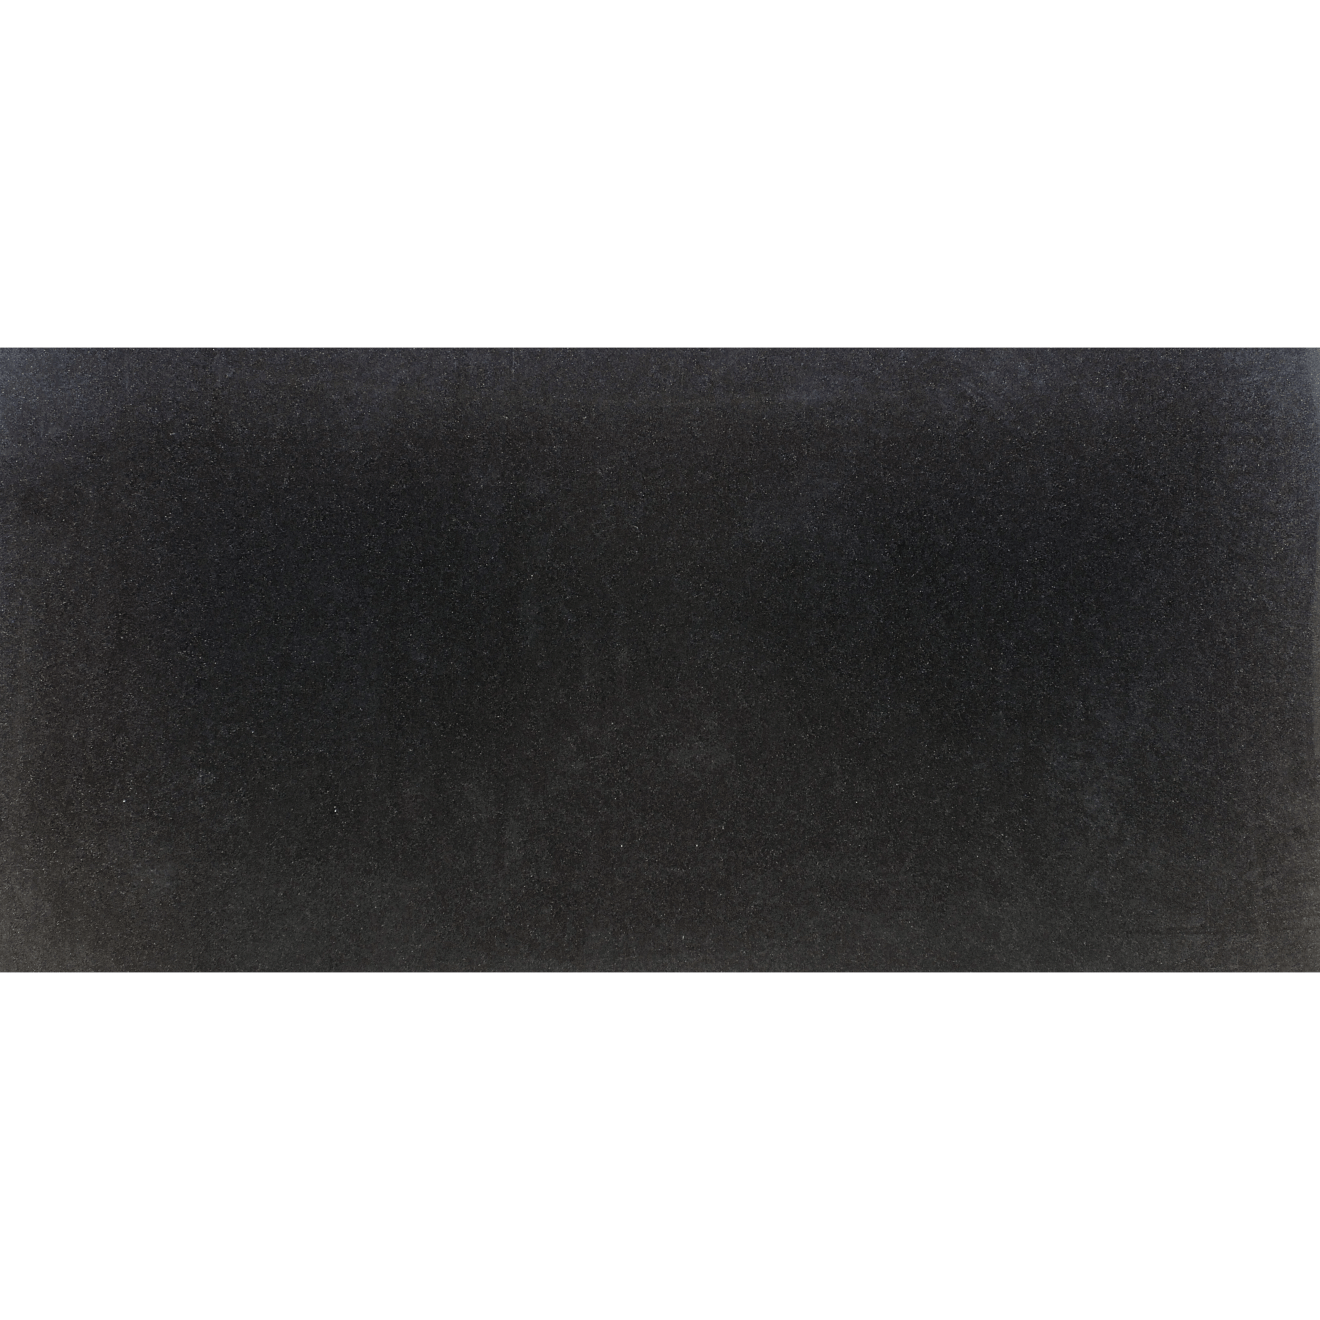 Absolute Black - Granite Worx